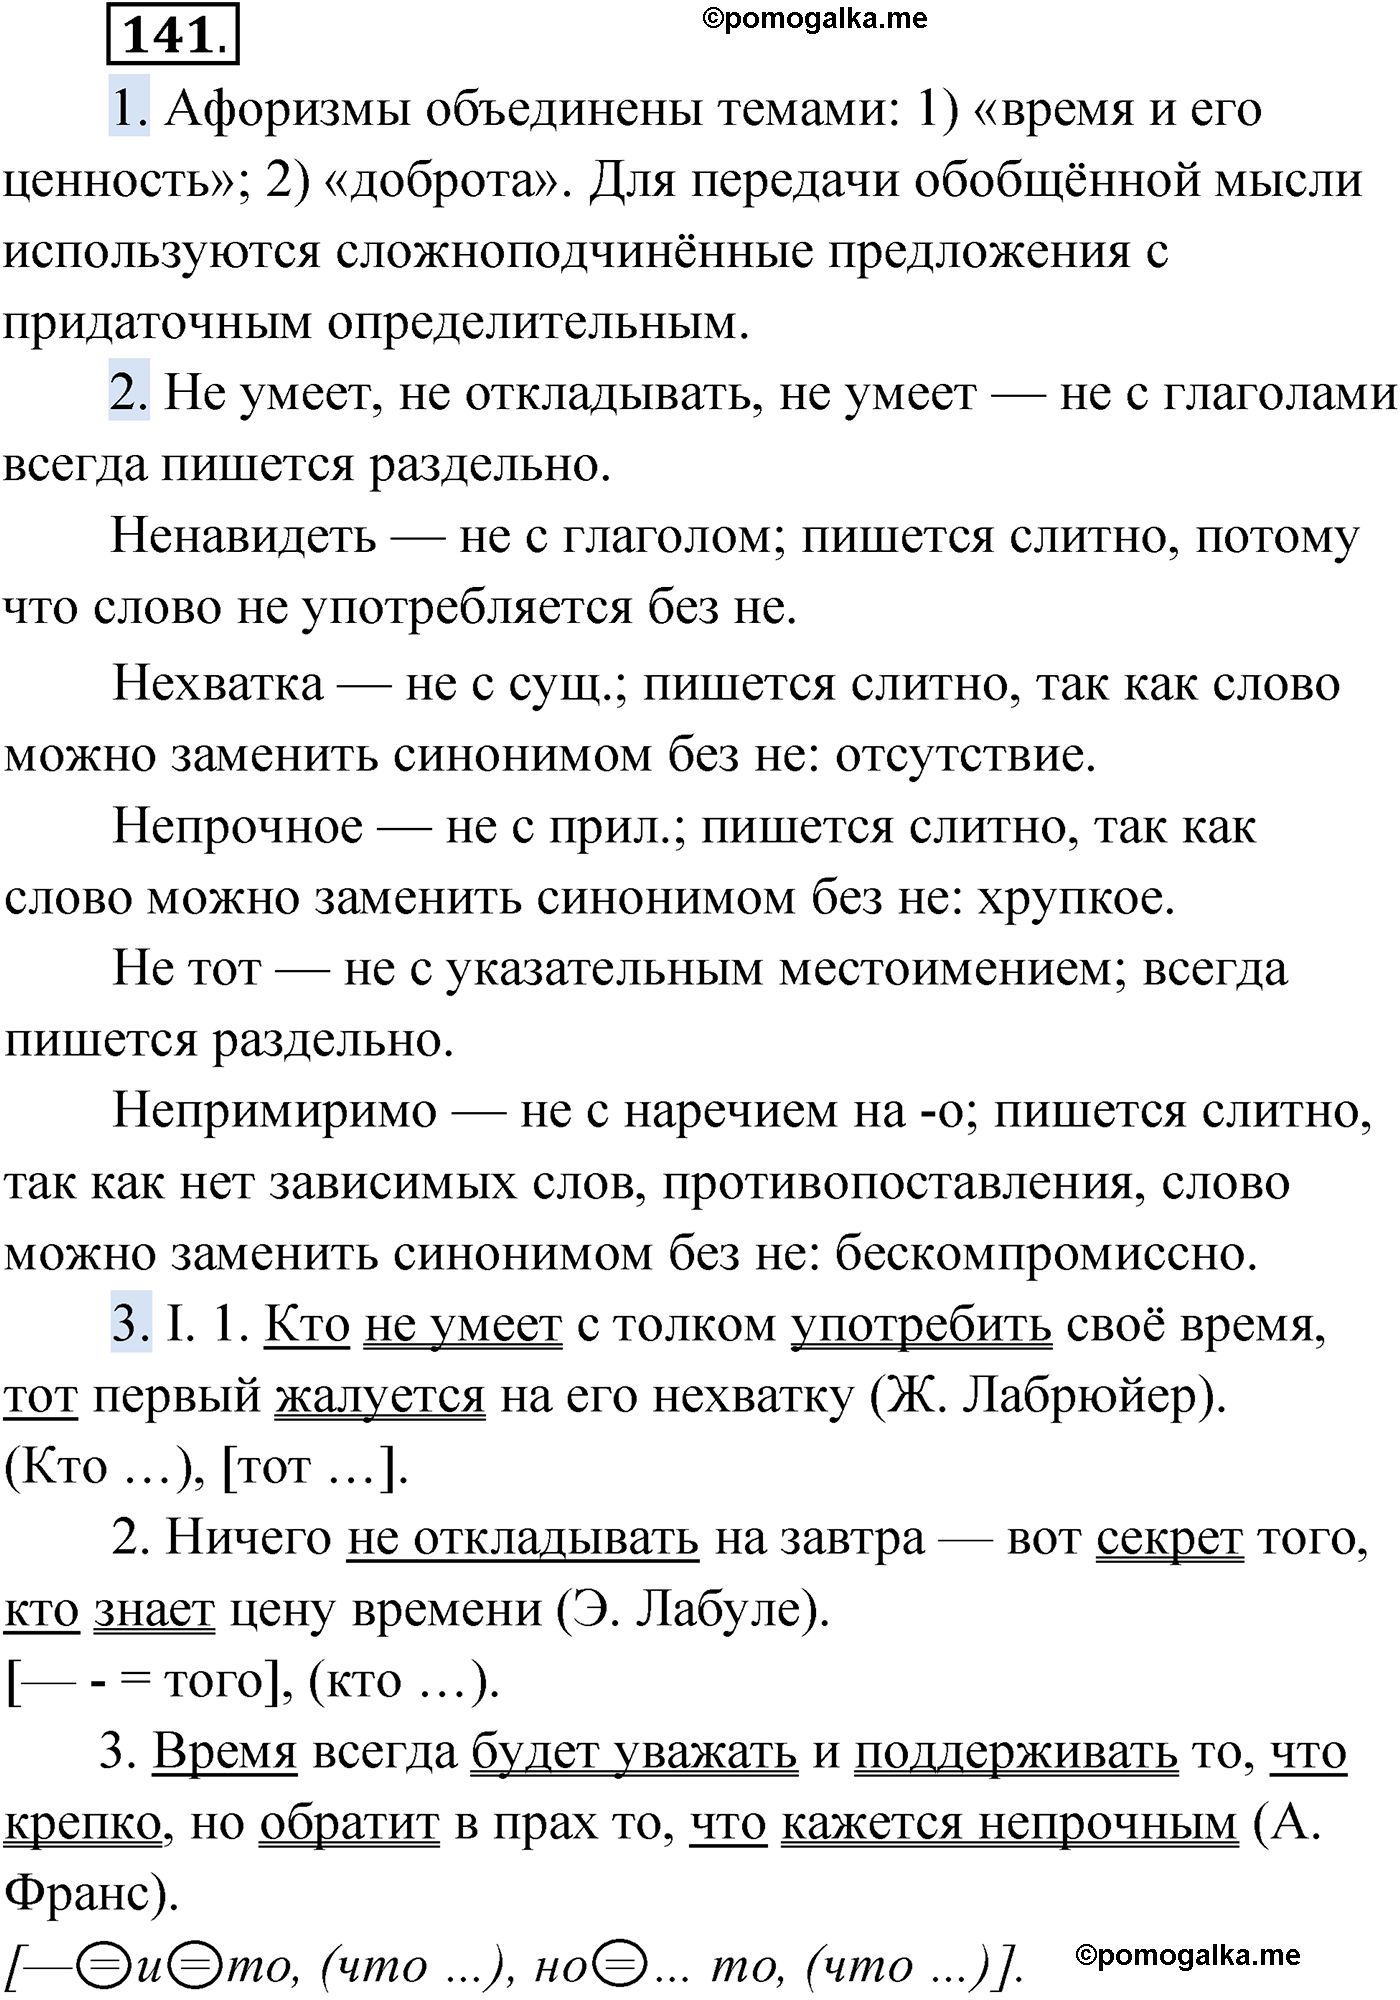 упражнение №141 русский язык 9 класс Мурина 2019 год